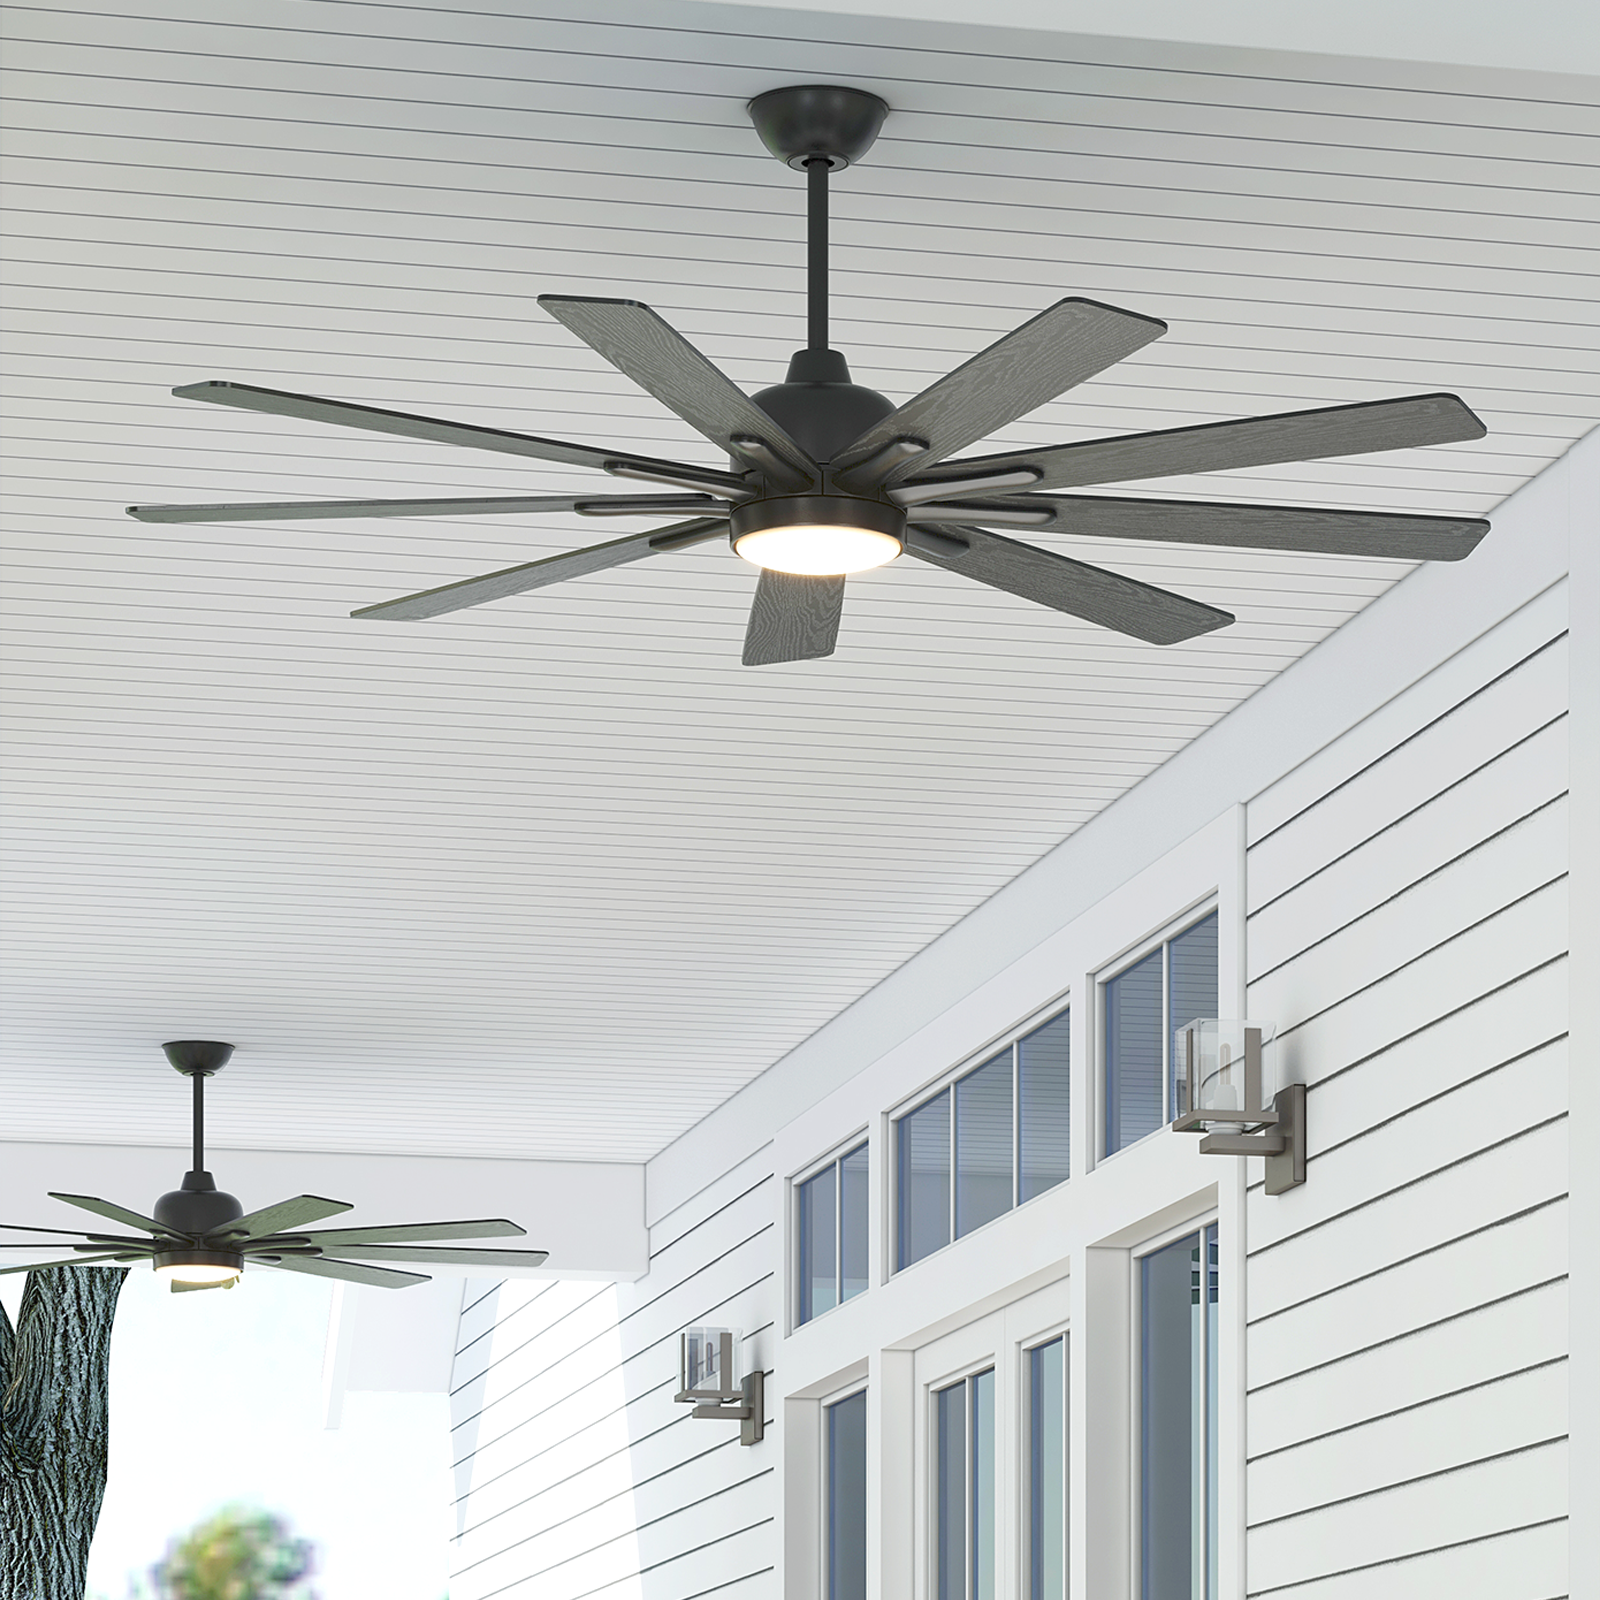 62‘’Hyggge ceiling fan